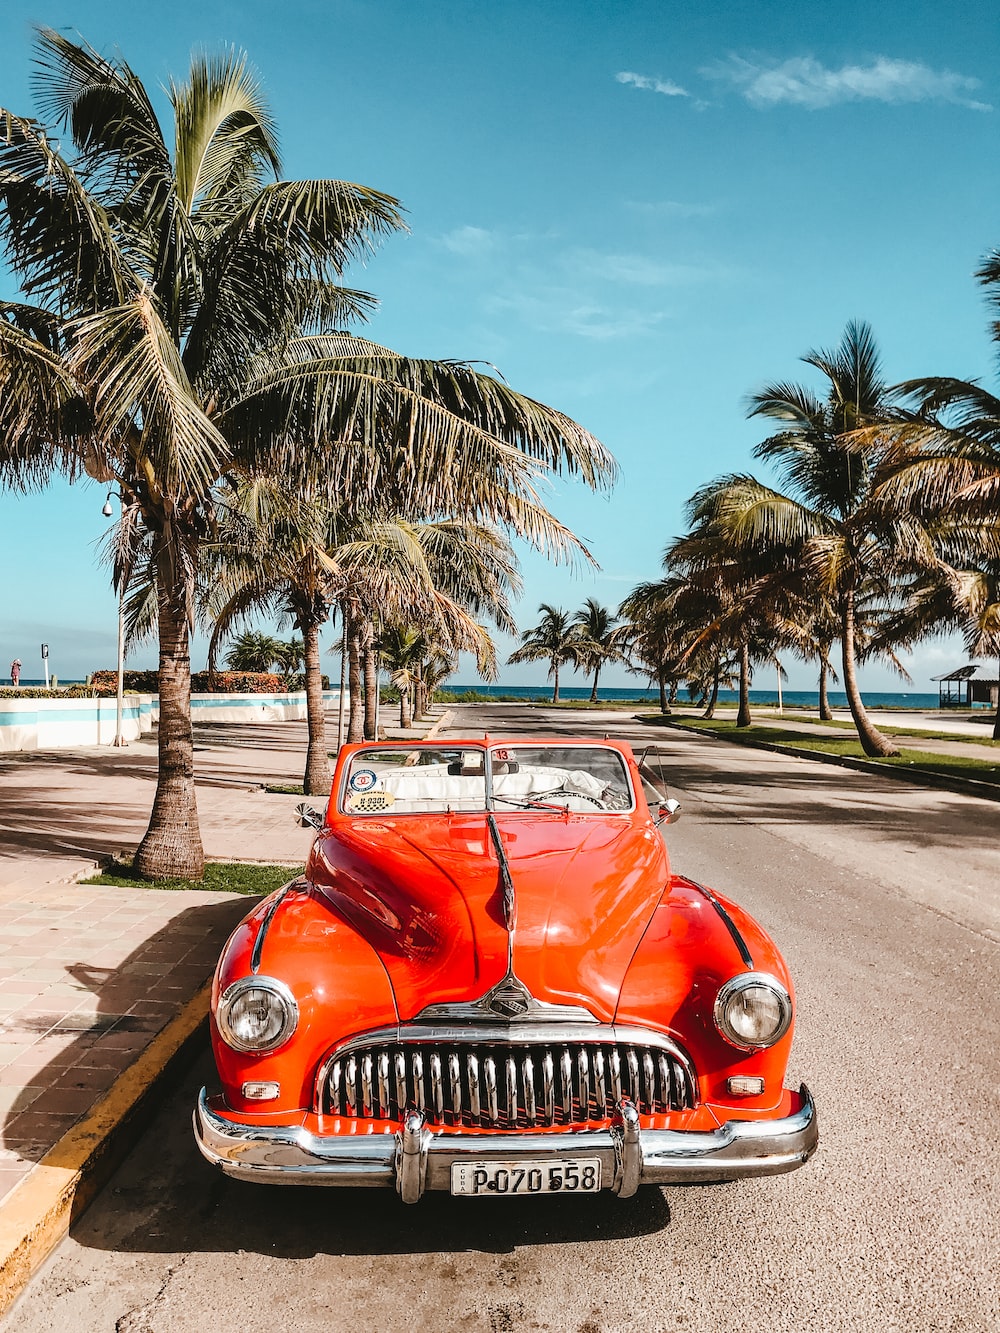 Cuba Cars Photos Wallpapers